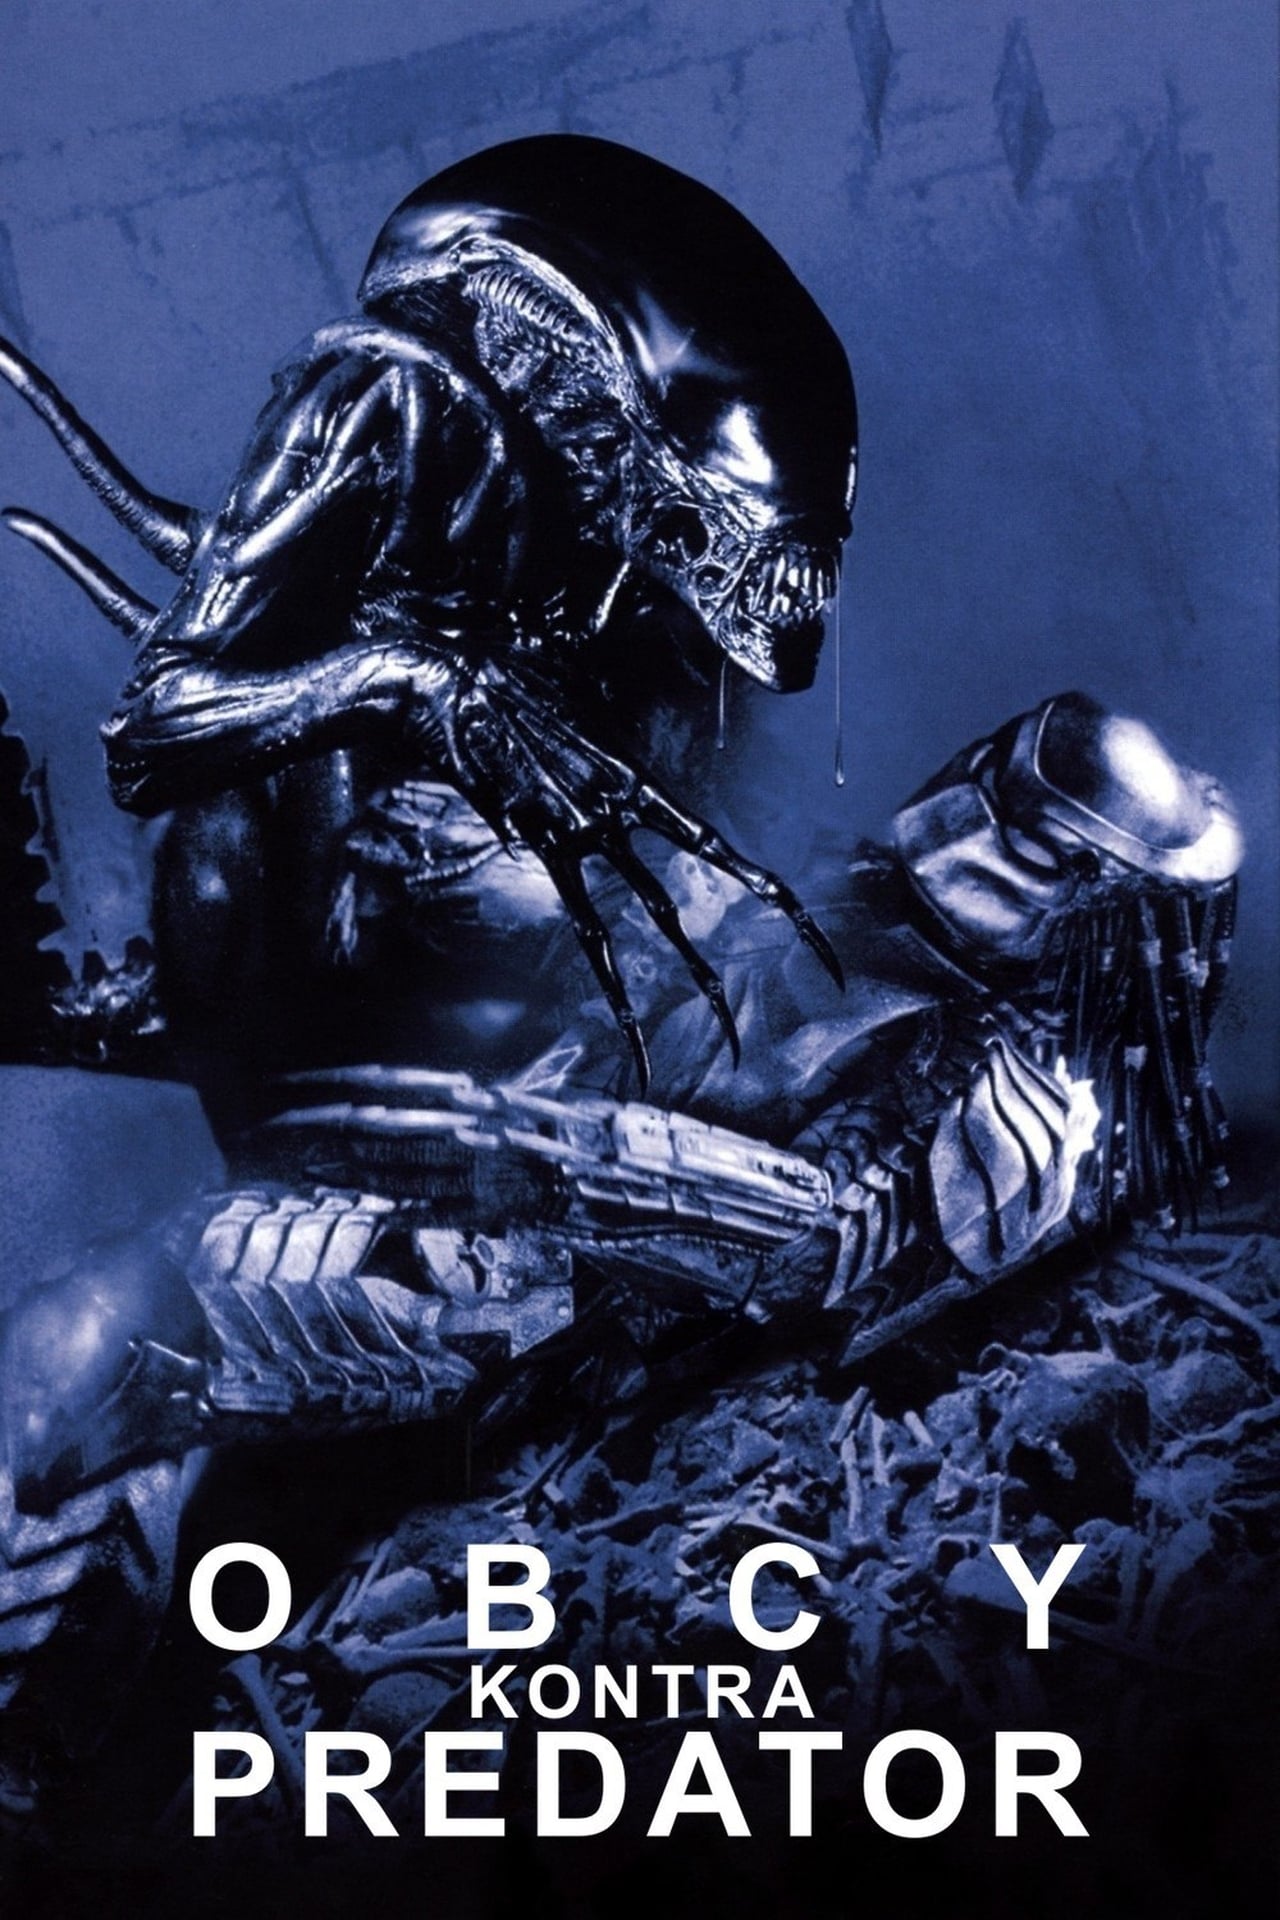 download avp alien vs predator